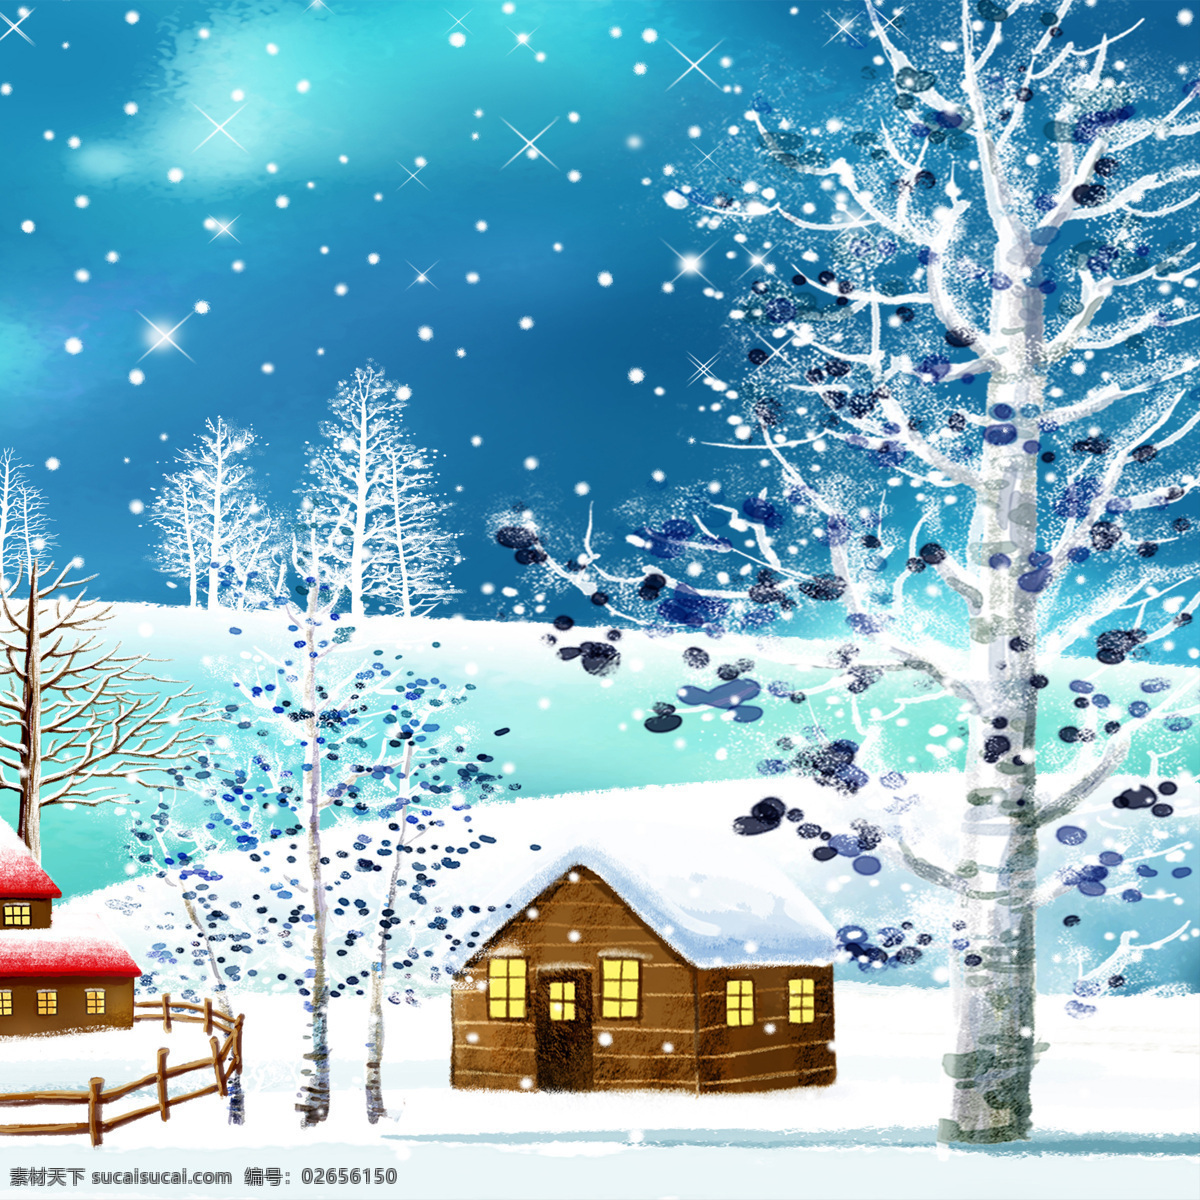 雪 夜景 图 大树 房子 夜空 装饰素材 无框画